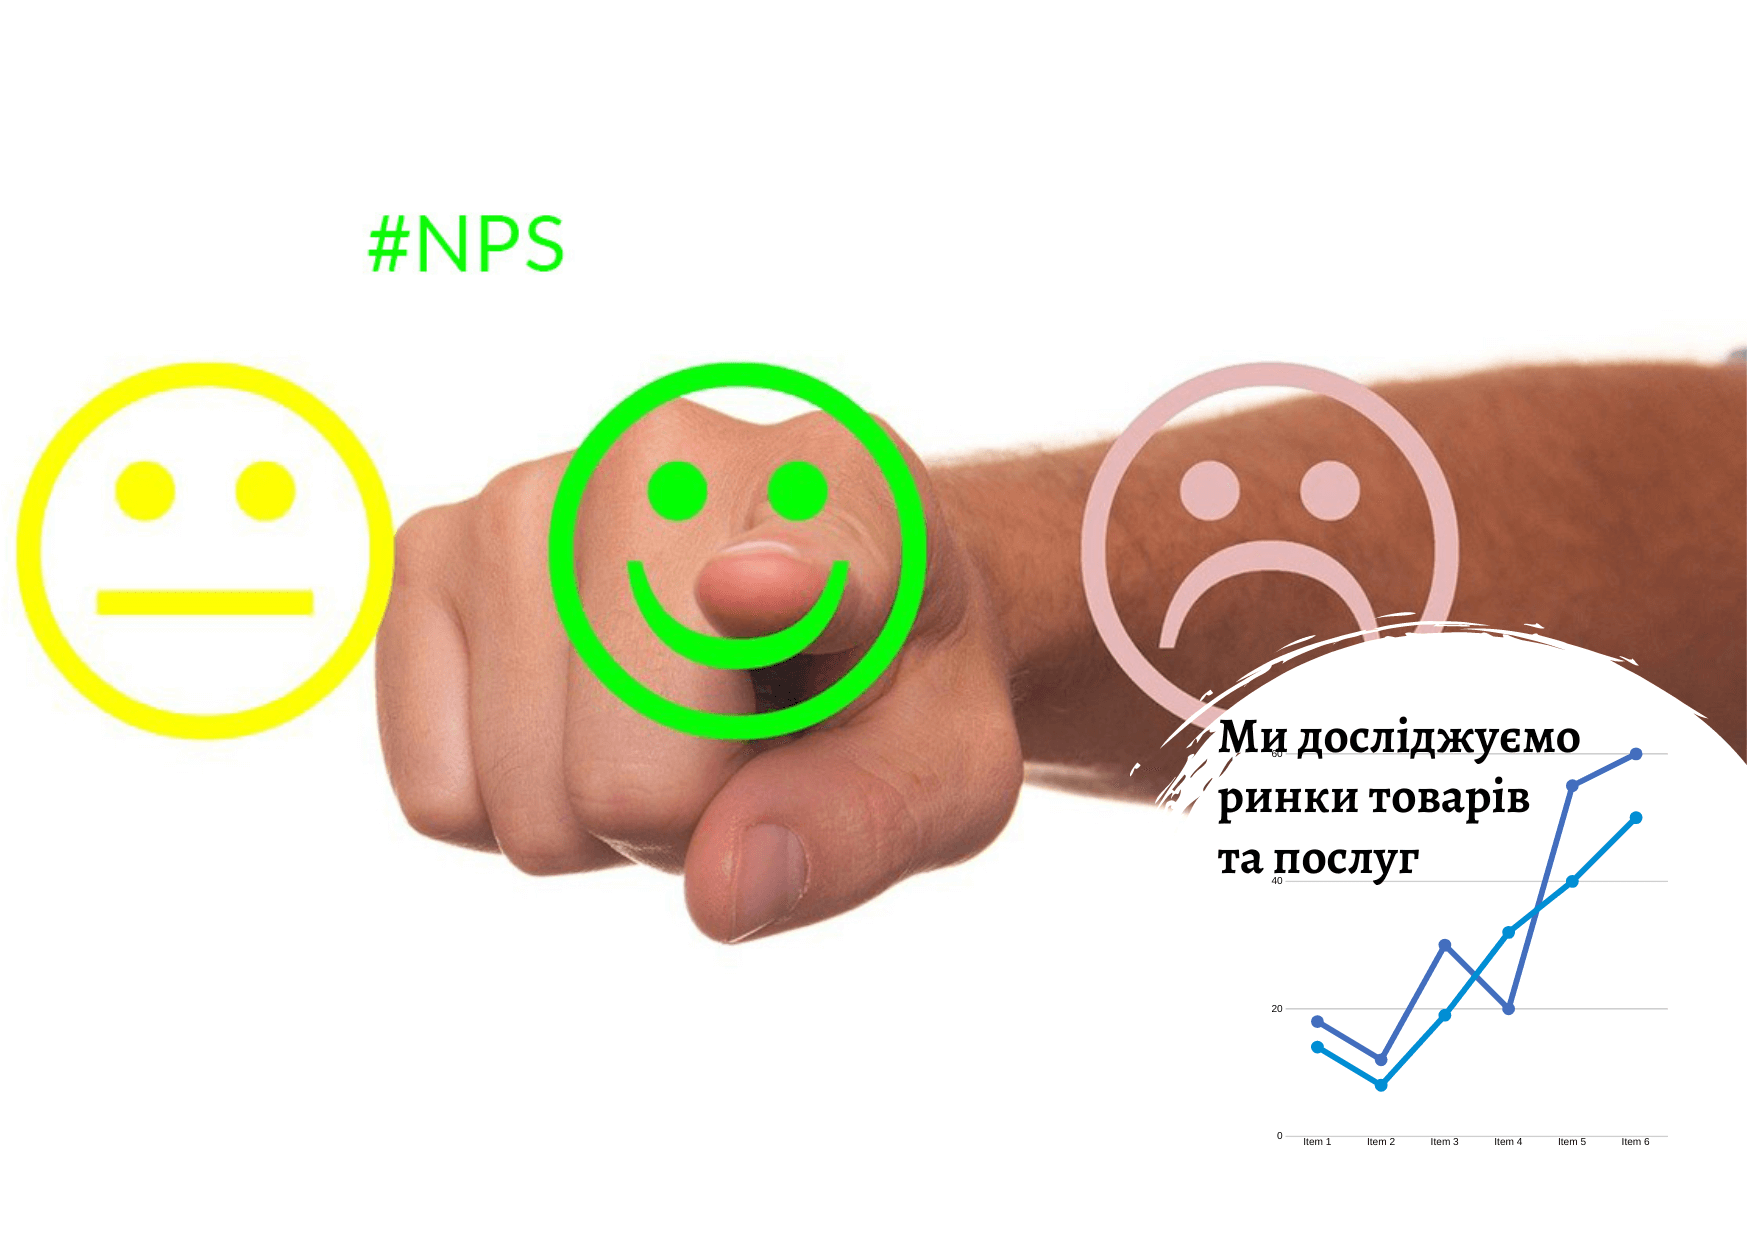 NPS-опрос выявит отношение потребителей к вашему продукту